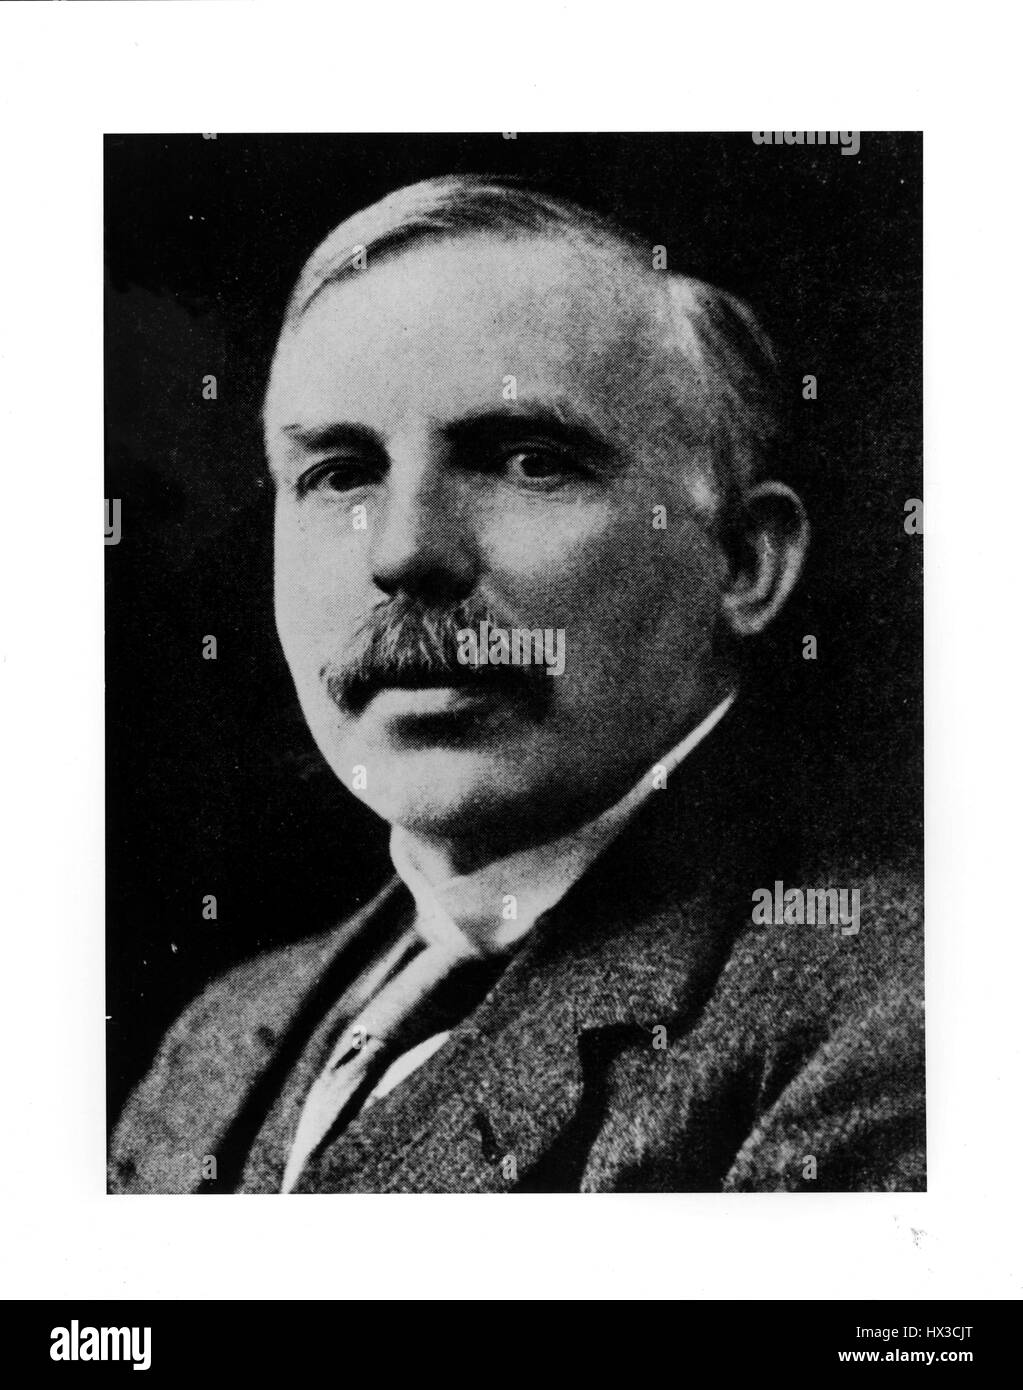 Portrait d'Earnest Rutherford, lauréat du Prix Nobel de chimie 1908, 1920. Image courtoisie du département américain de l'énergie. Banque D'Images